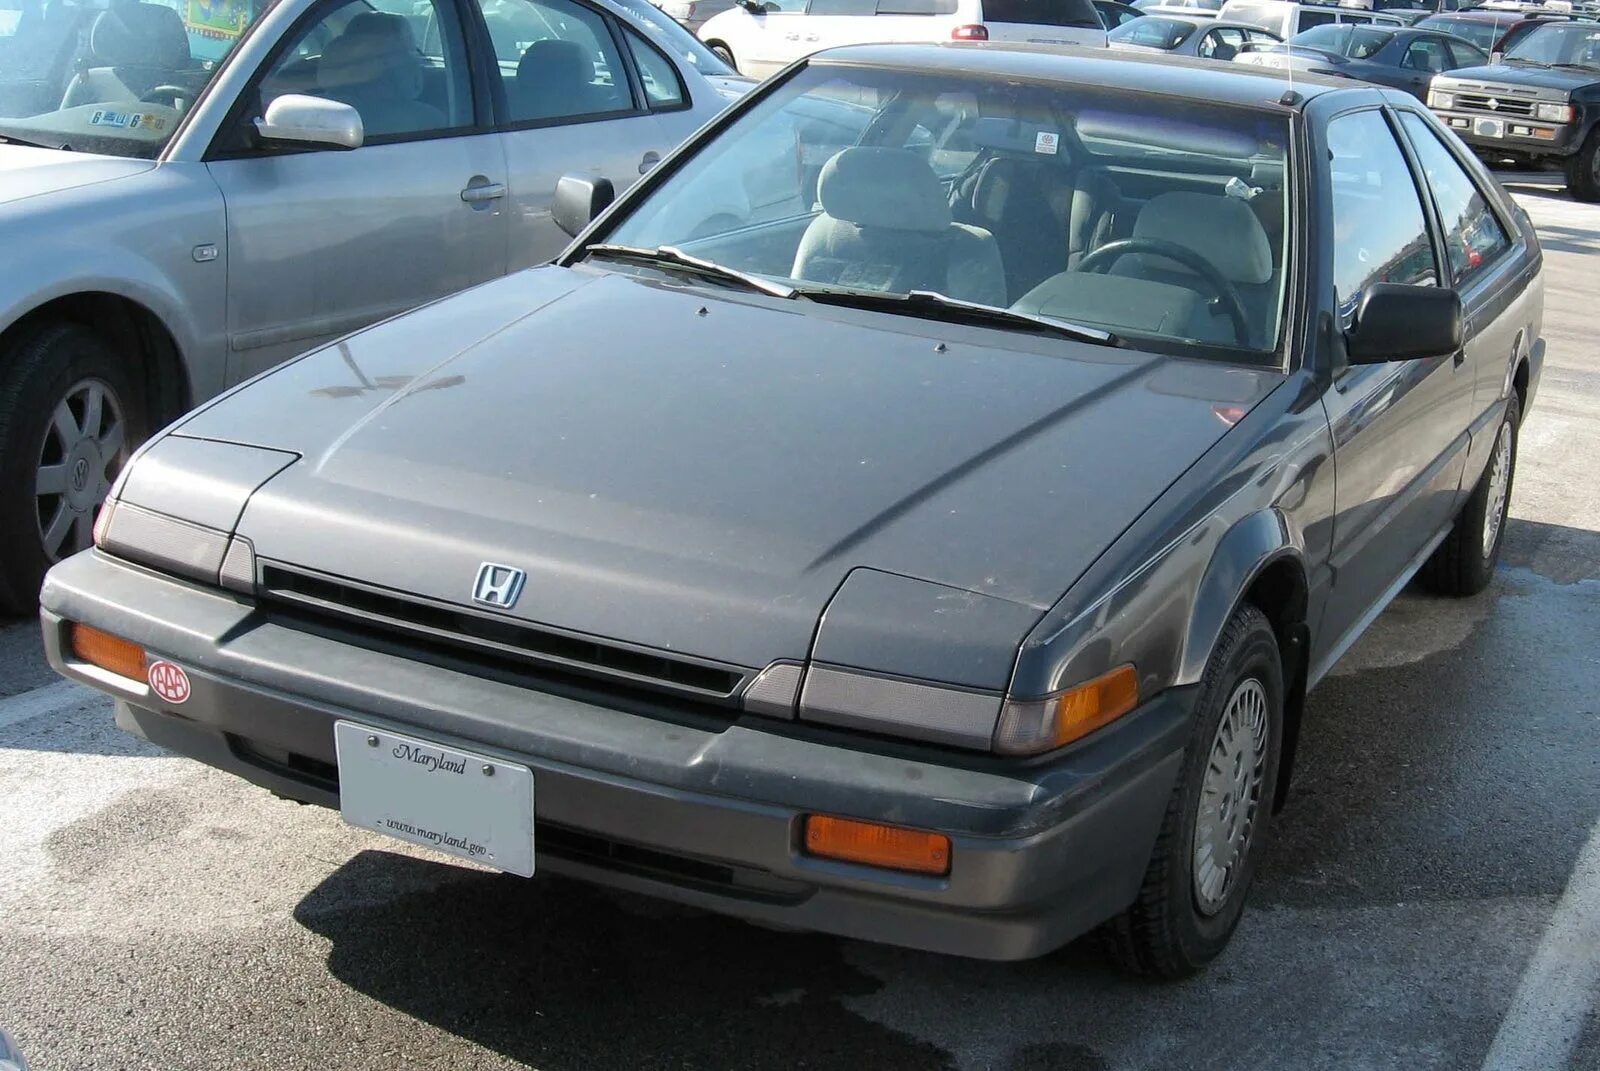 Honda Accord 1989. Хонда Аккорд 3 1989. Honda Accord Hatchback 1989. Honda Accord III 1985. Старые honda